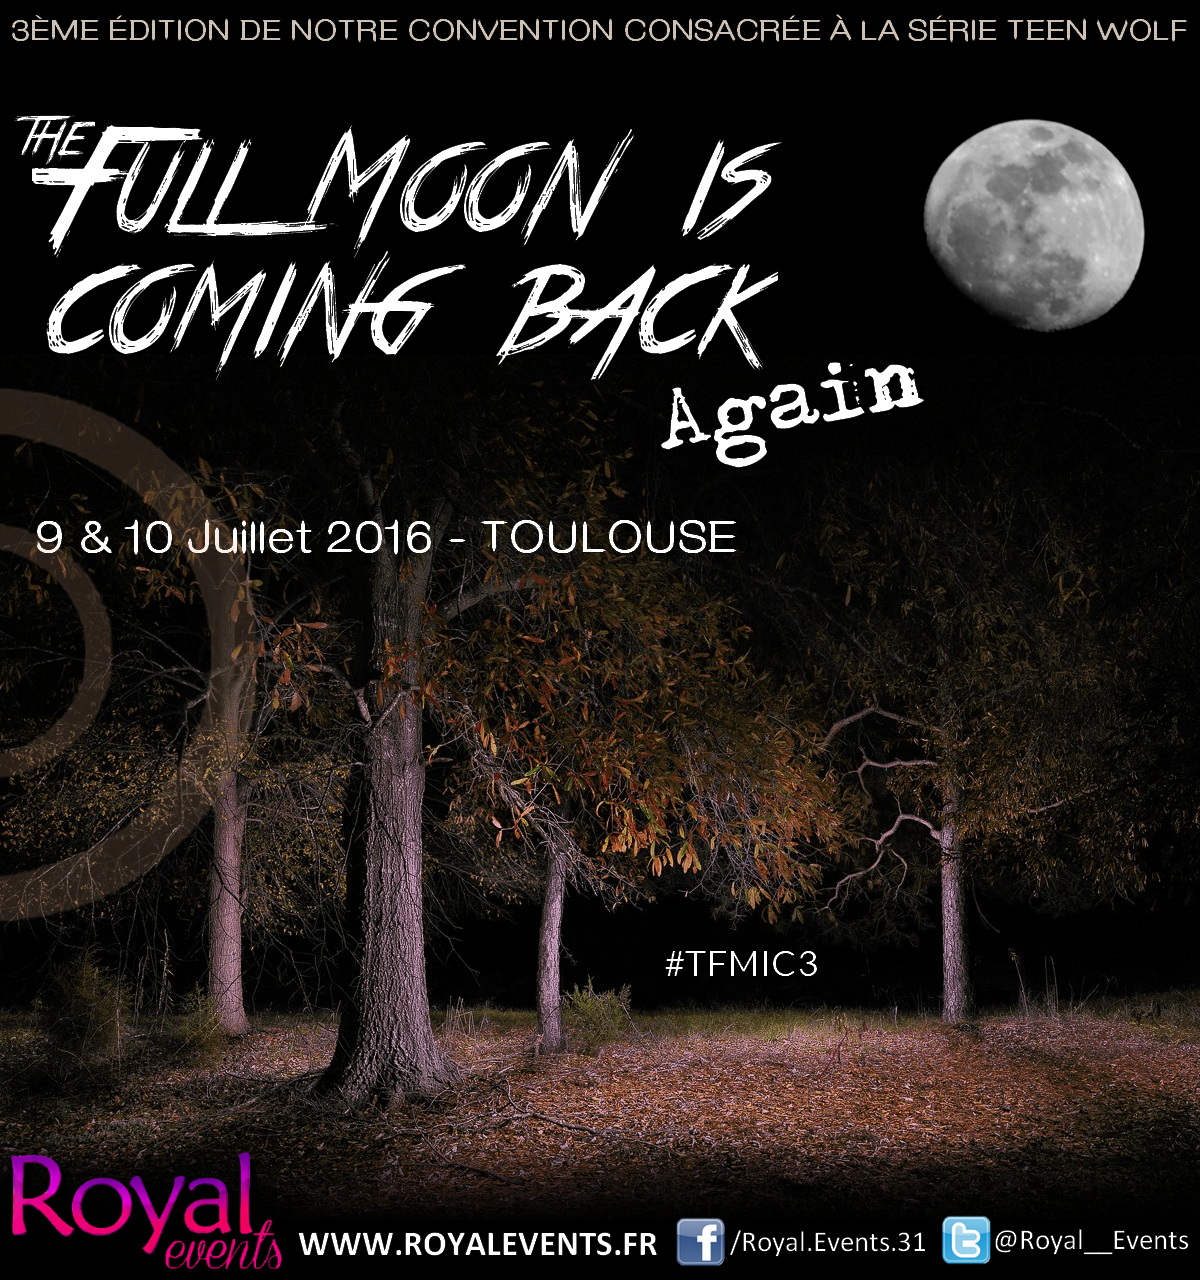 The Full Moon is coming back : la convention dédiée à Teen Wolf à Toulouse cet été, déjà 5 invités confirmés!